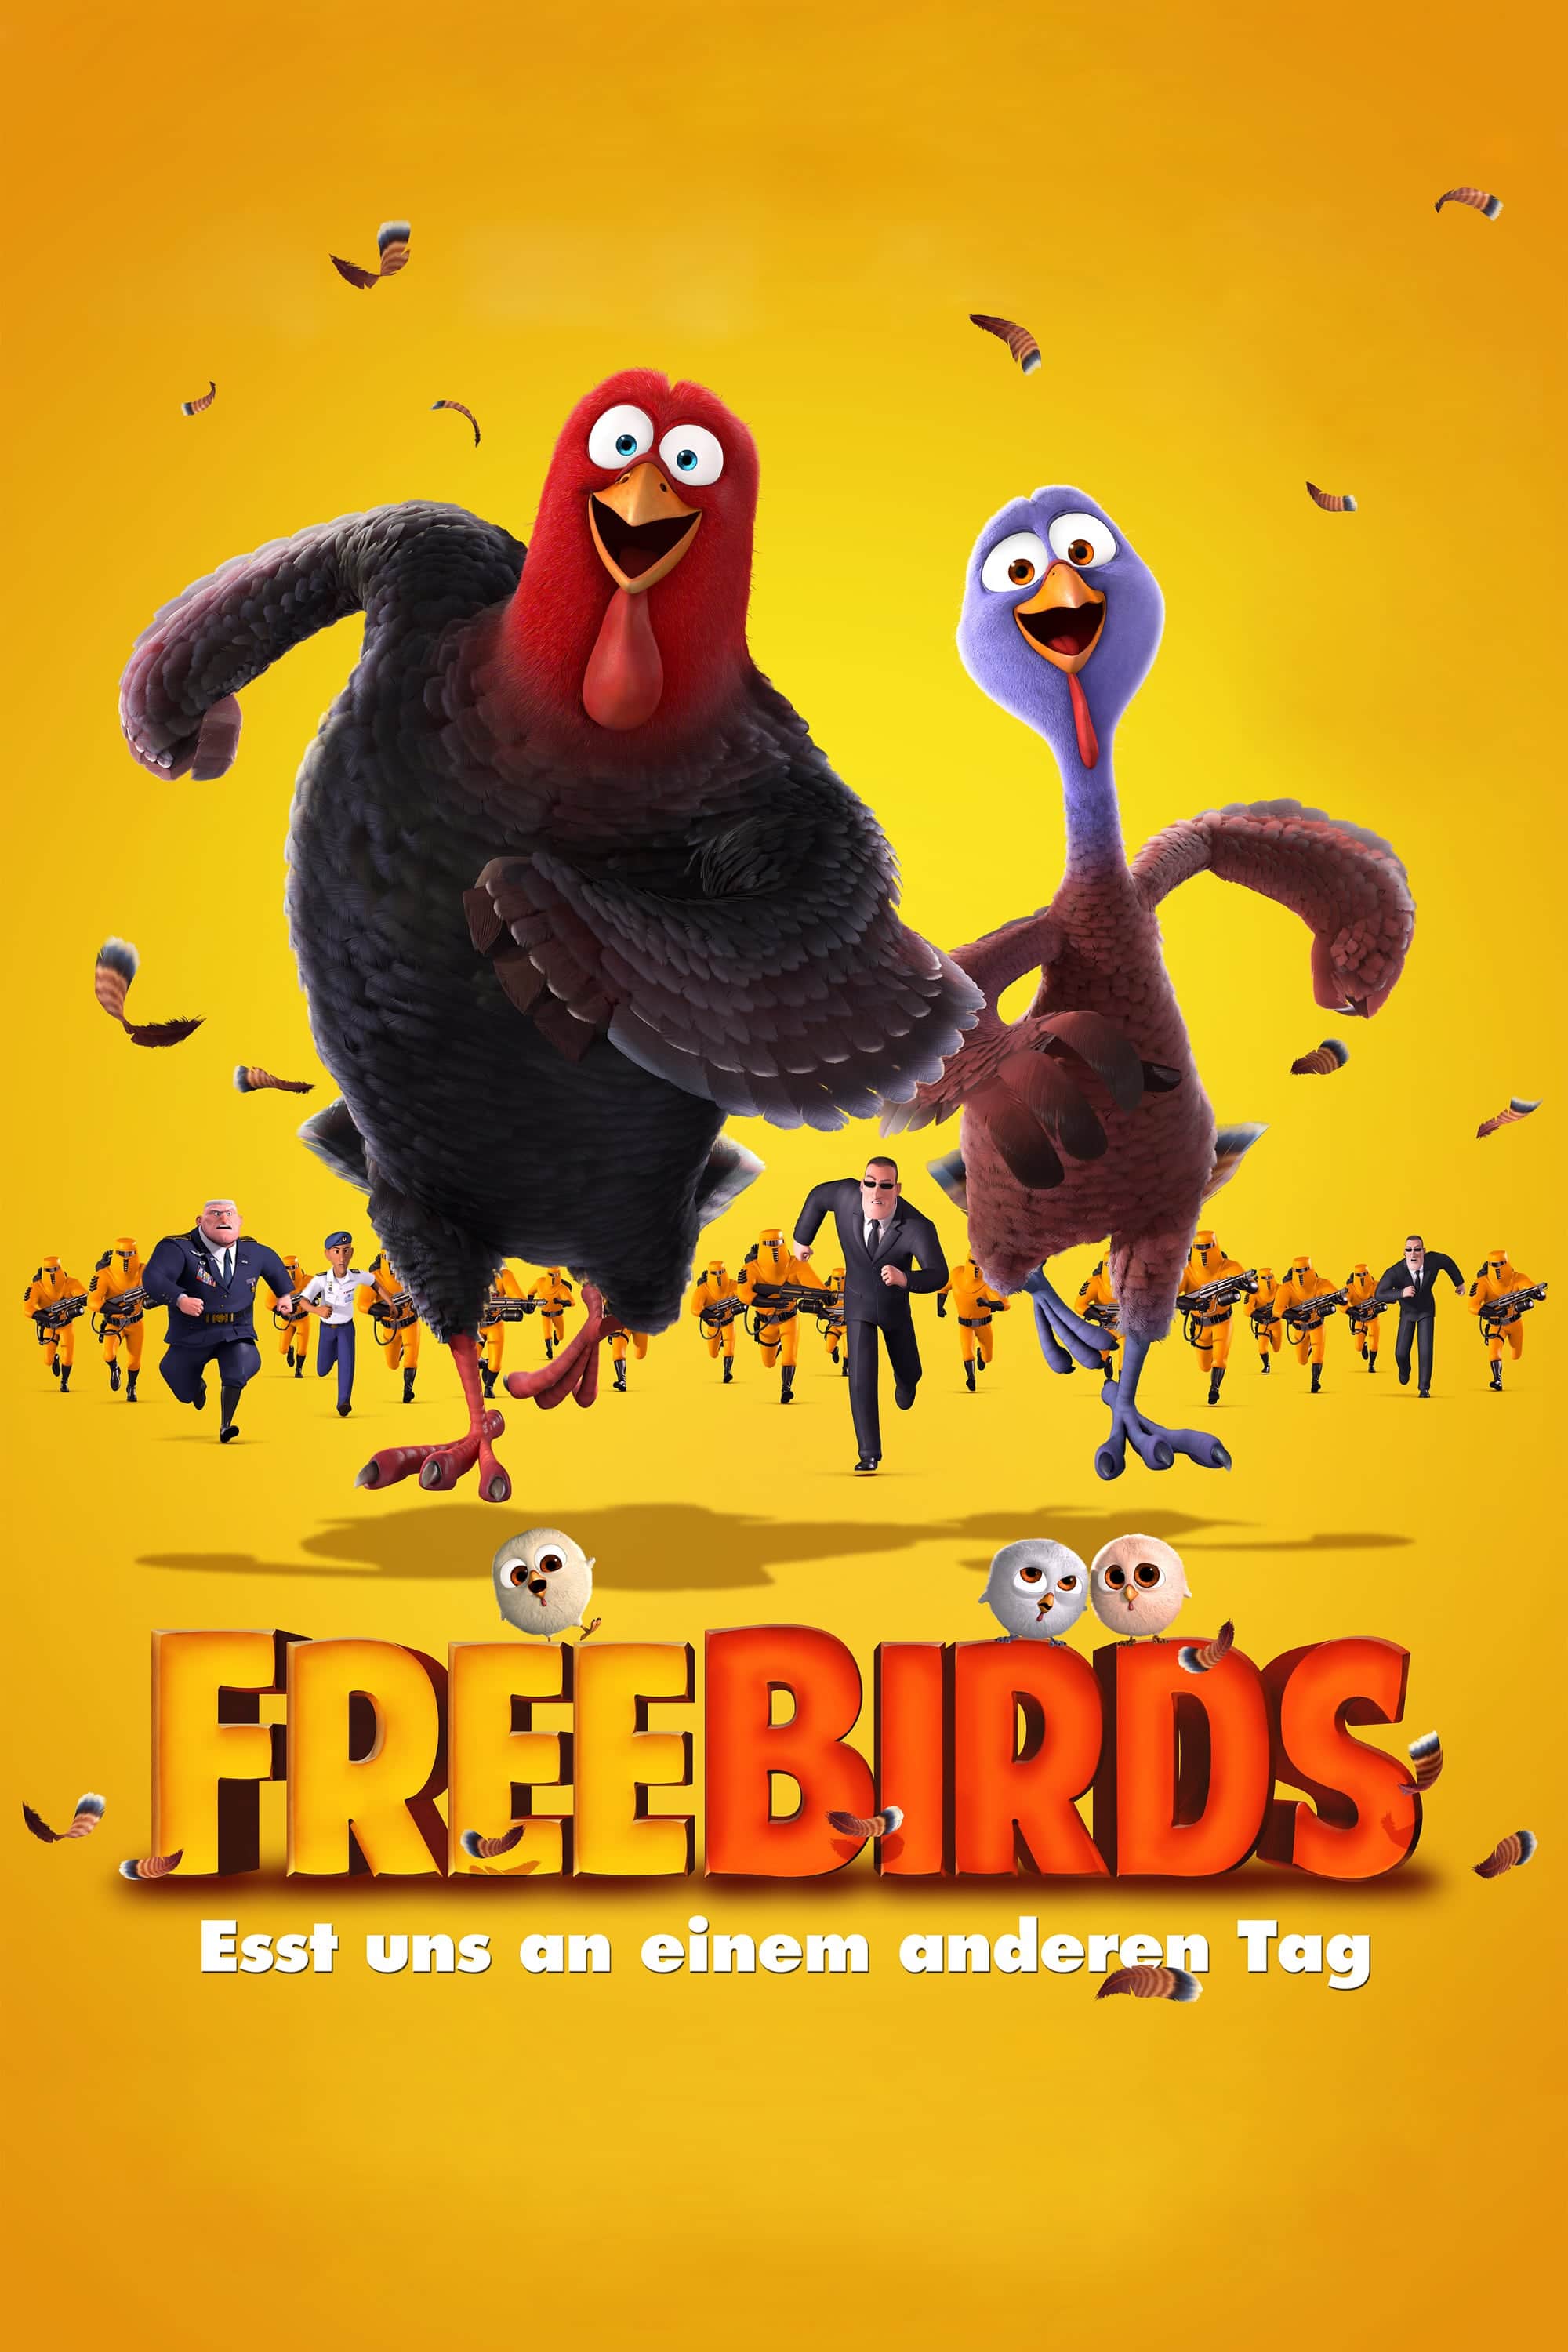 Plakat von "Free Birds - Esst uns an einem anderen Tag"